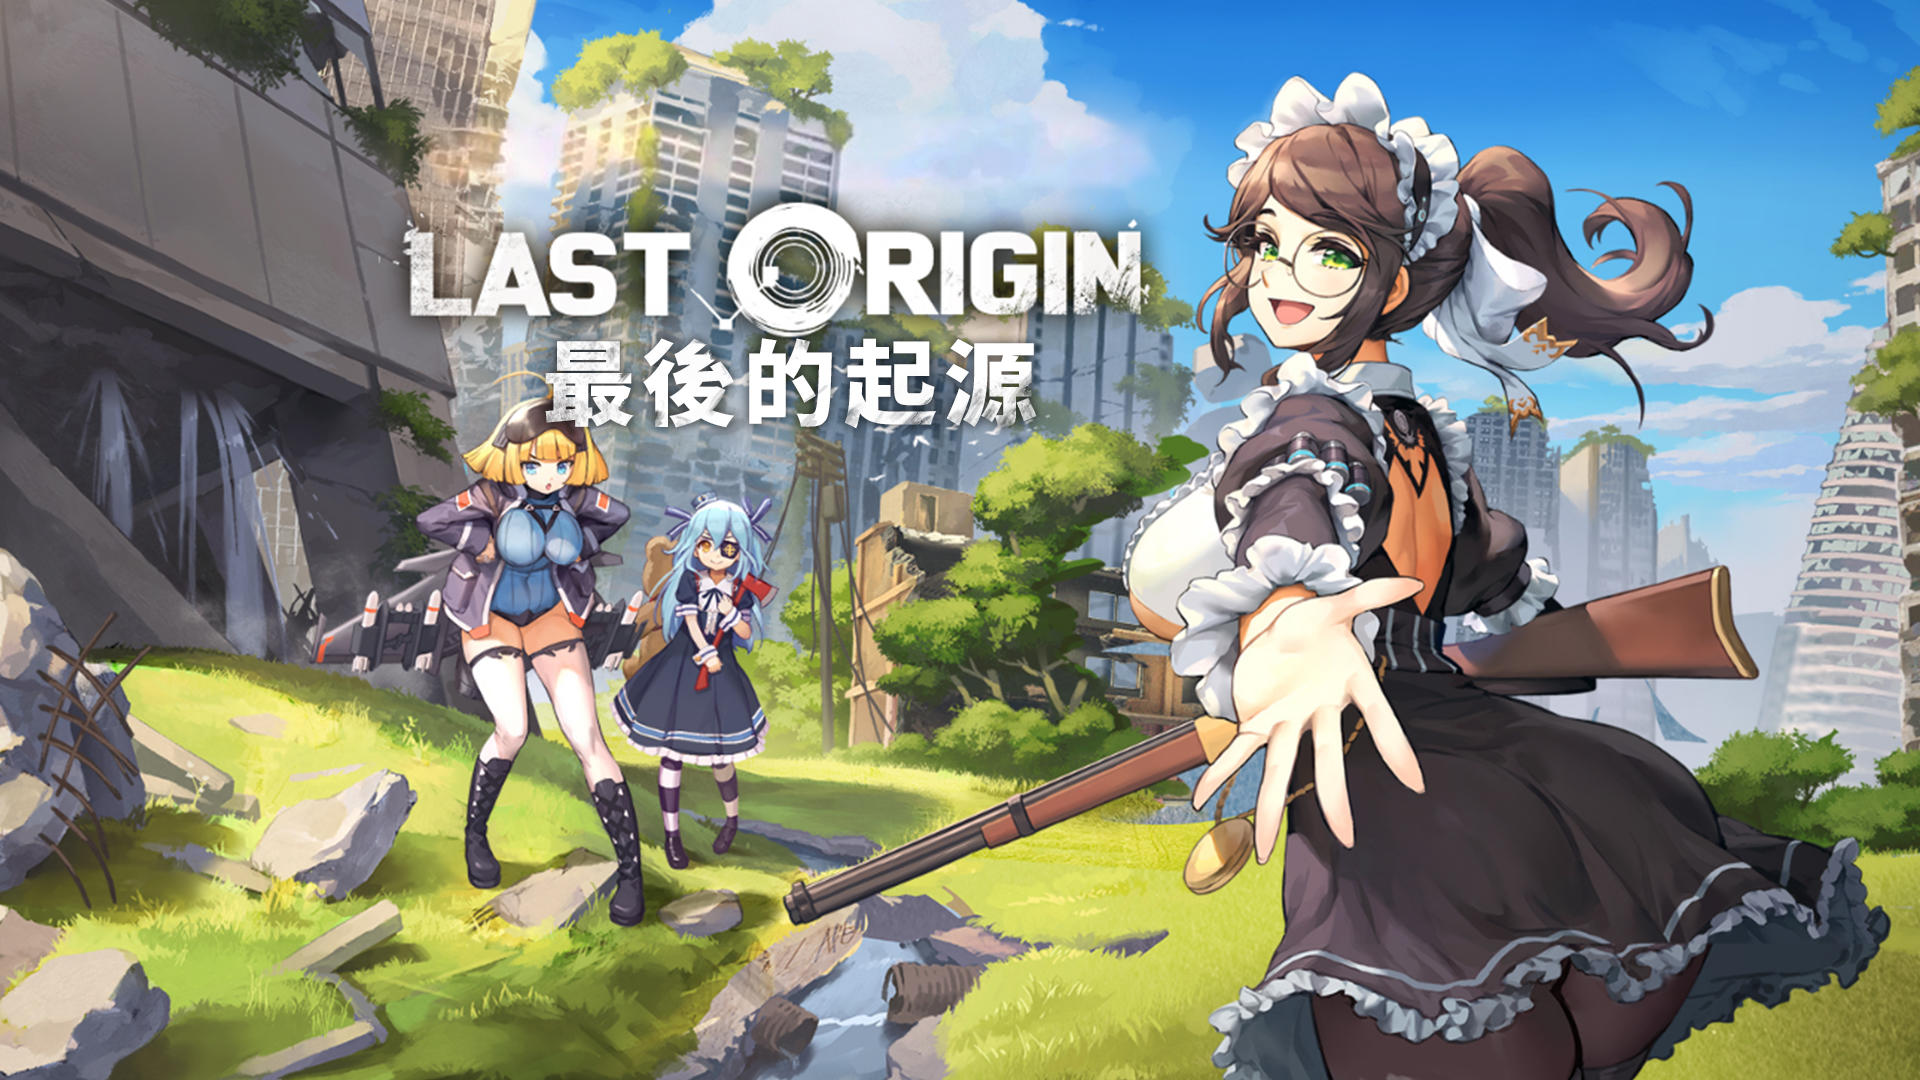 Original game is. Last Origin. Last Origin game. Poi last Origin. Last Origin International.